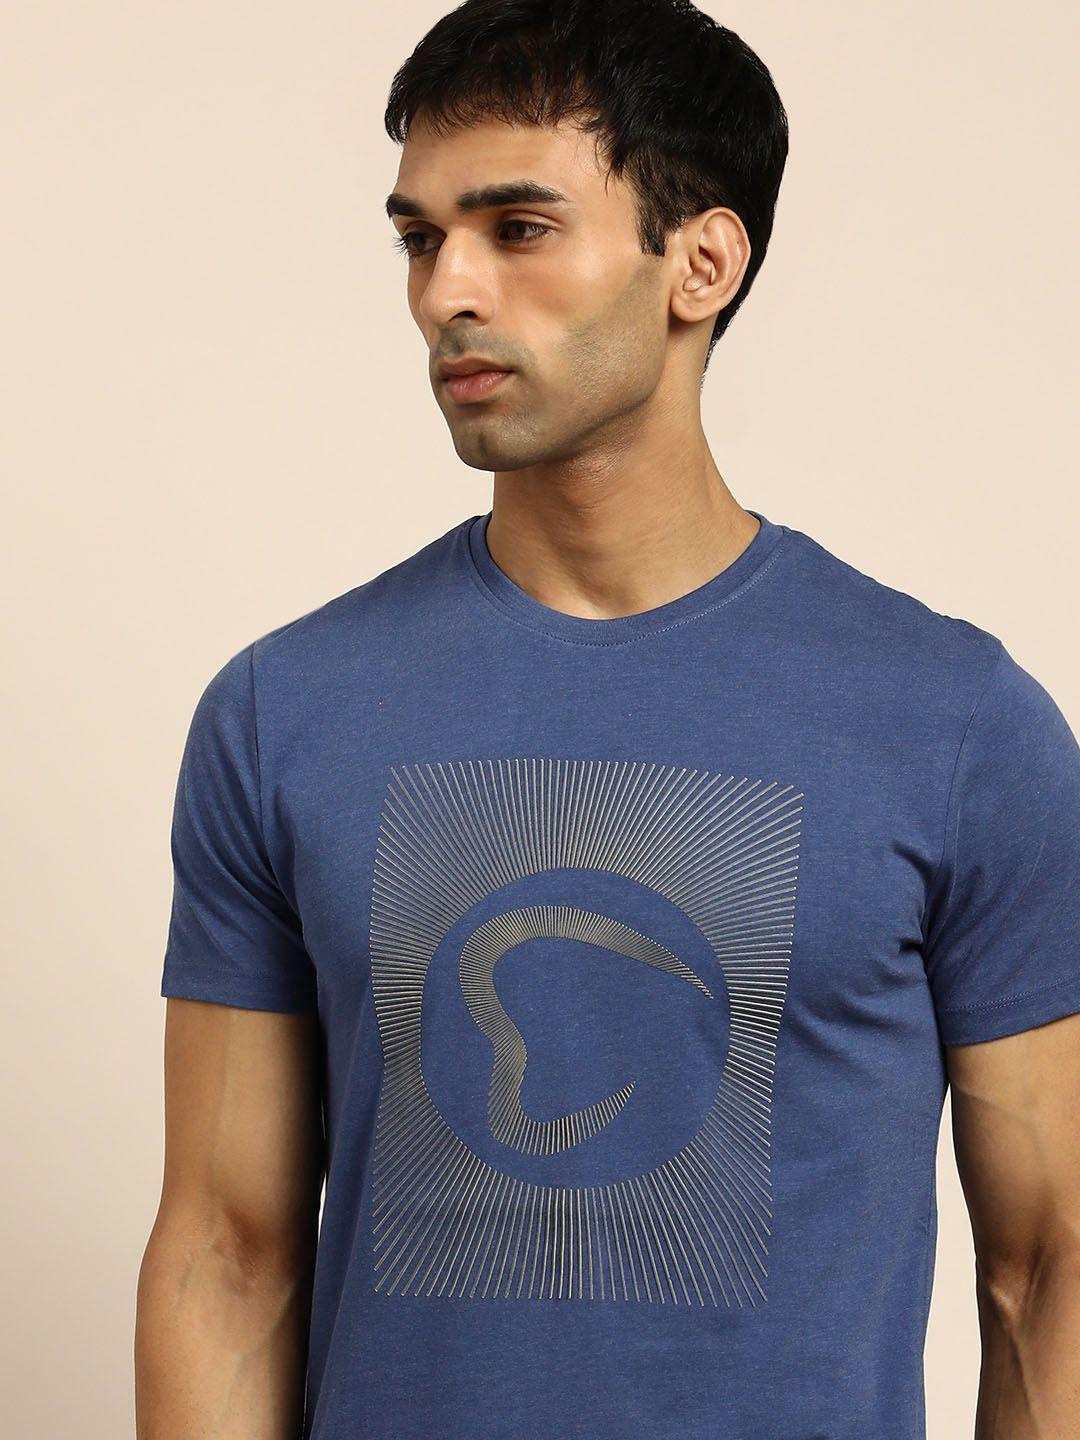 being human men blue brand logo printed t-shirt